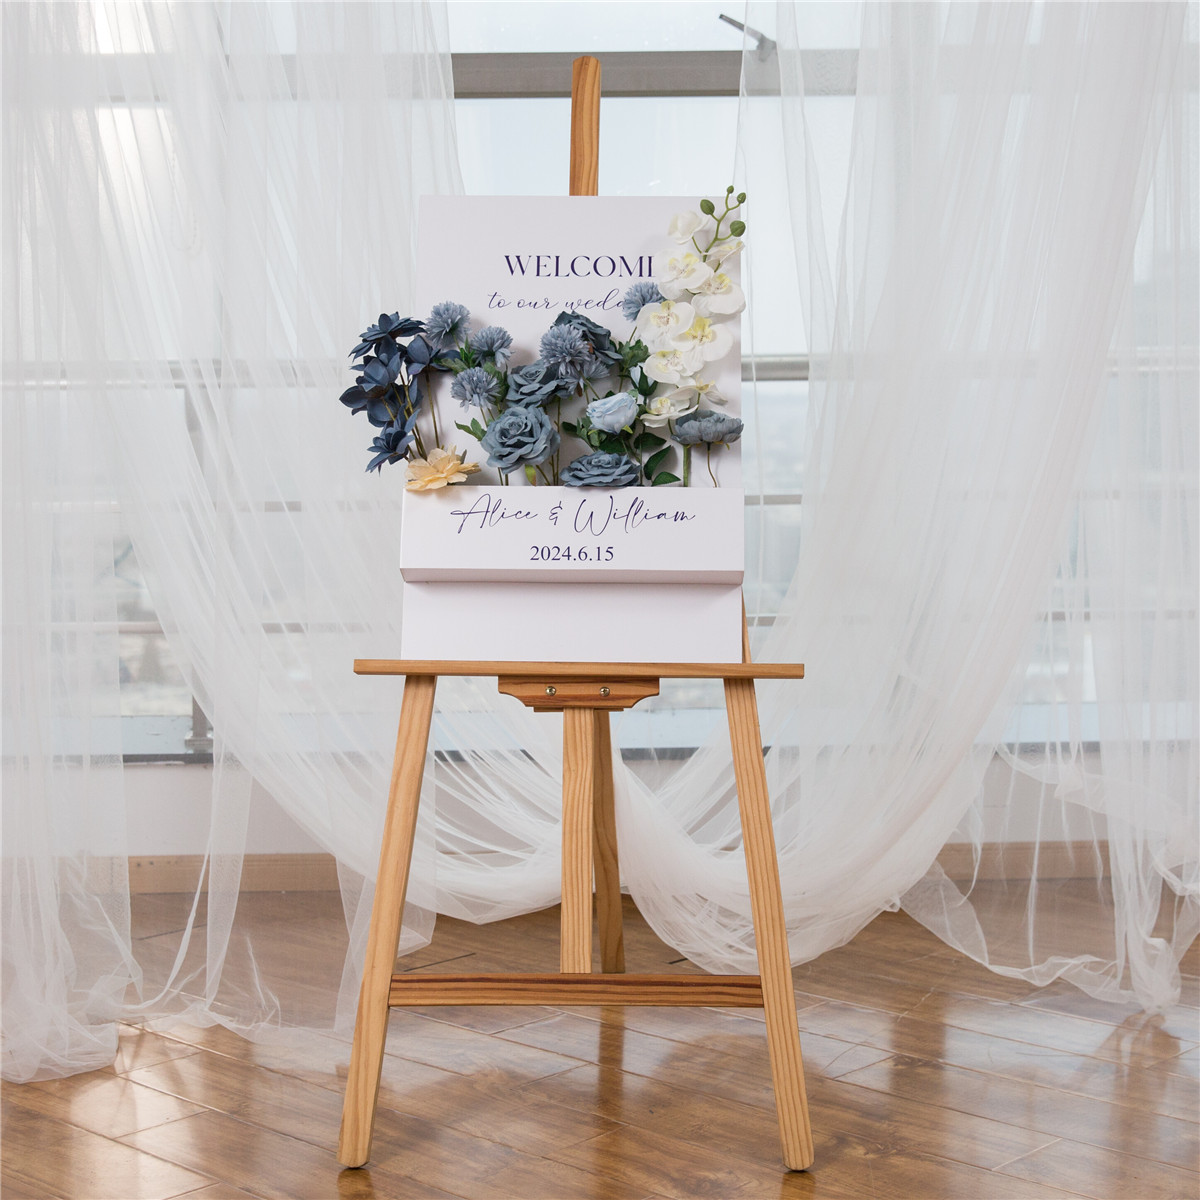 3mm Cartelli Plexiglass tableau di mariage con fiori YK071